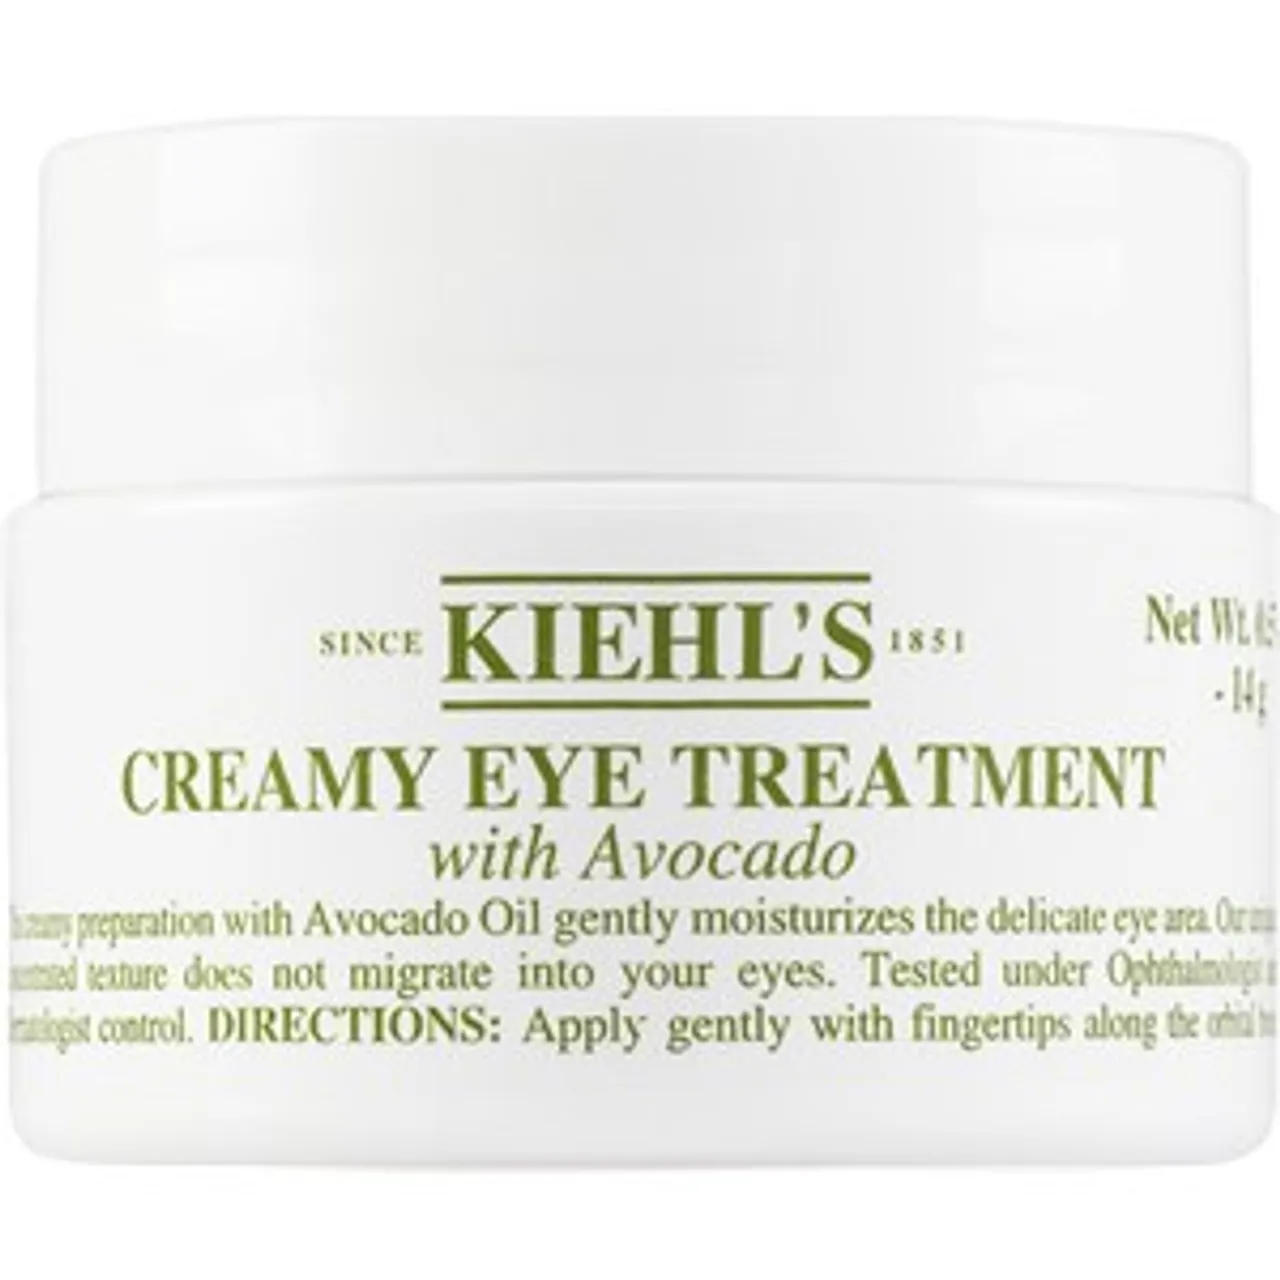 Kiehl's Creamy Eye Treatment with Avocado 2 28 ml